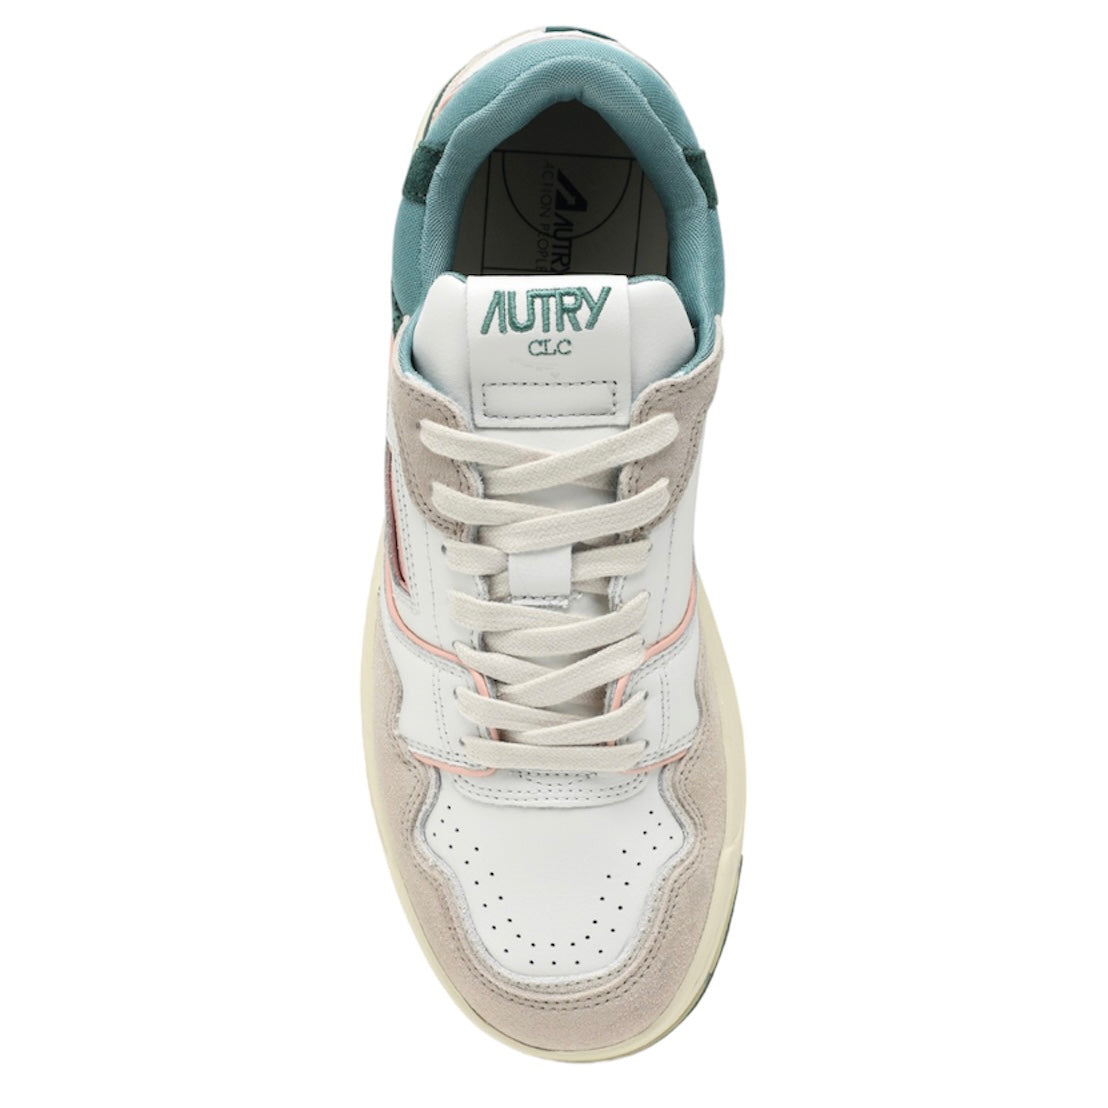  Autry Sneaker Clc Bianco Uomo - 3